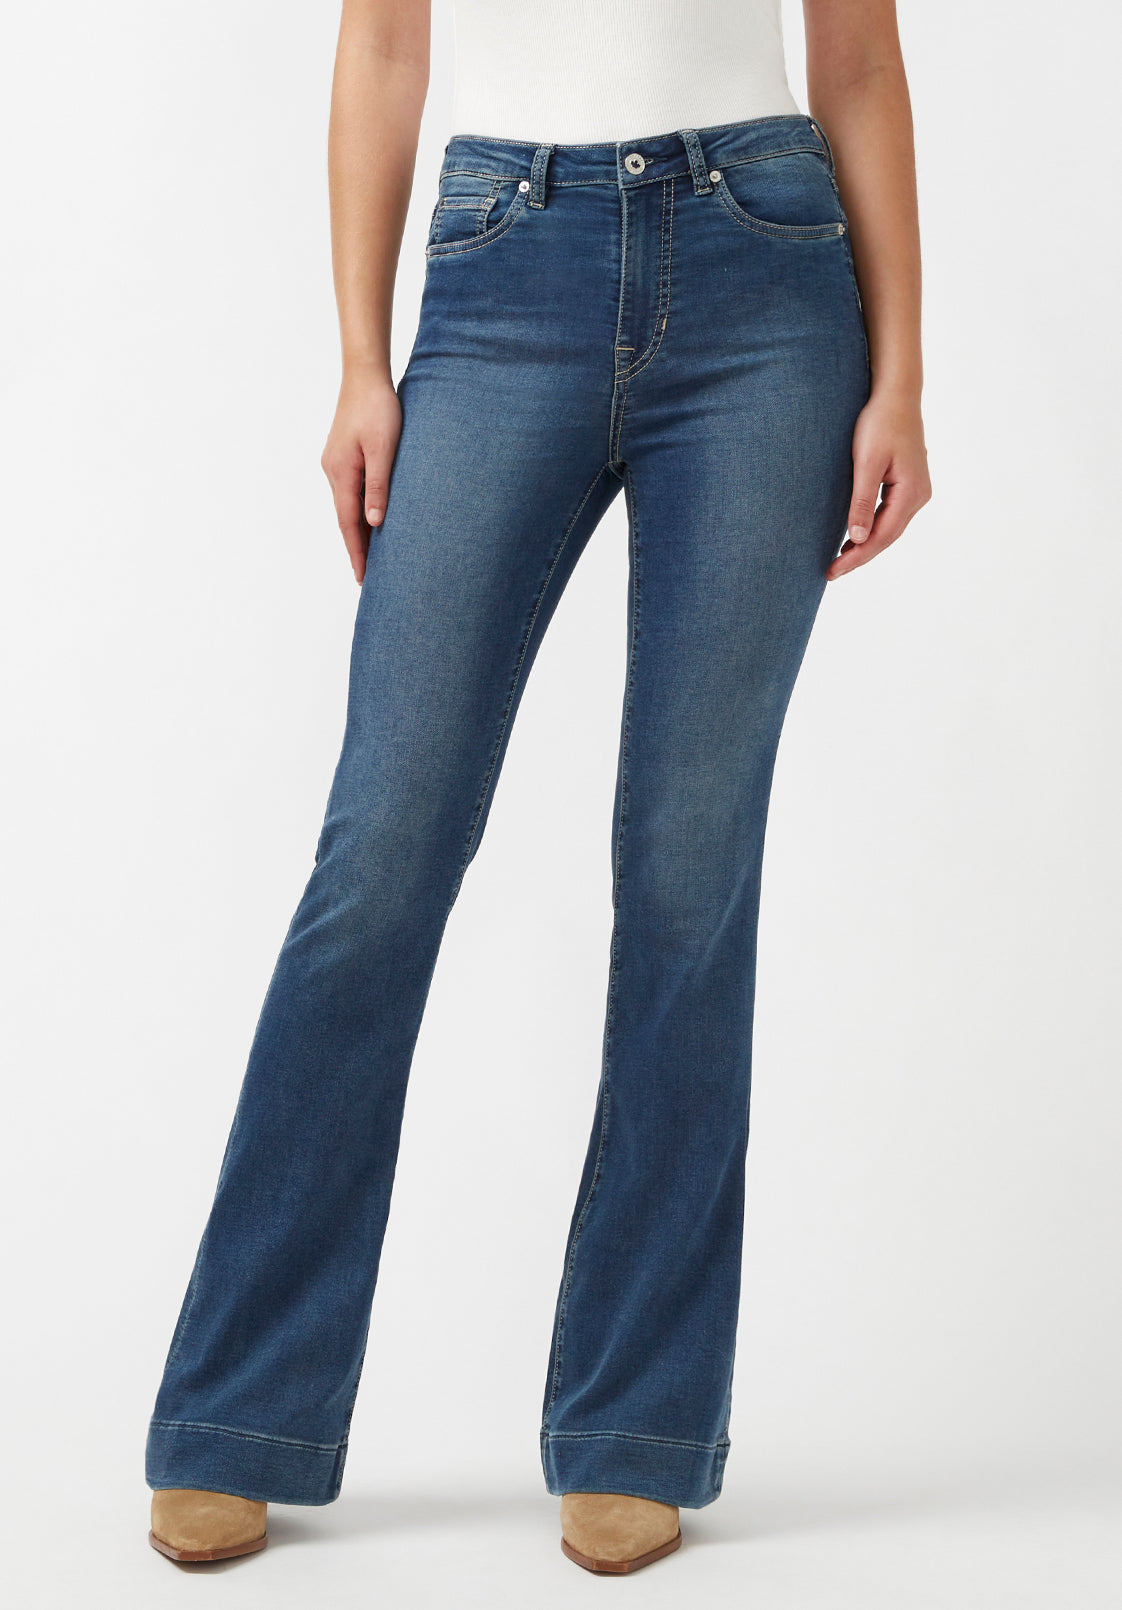 Women's Jeans | Best Jeans For Women | Buffalo Jeans – Buffalo Jeans - US